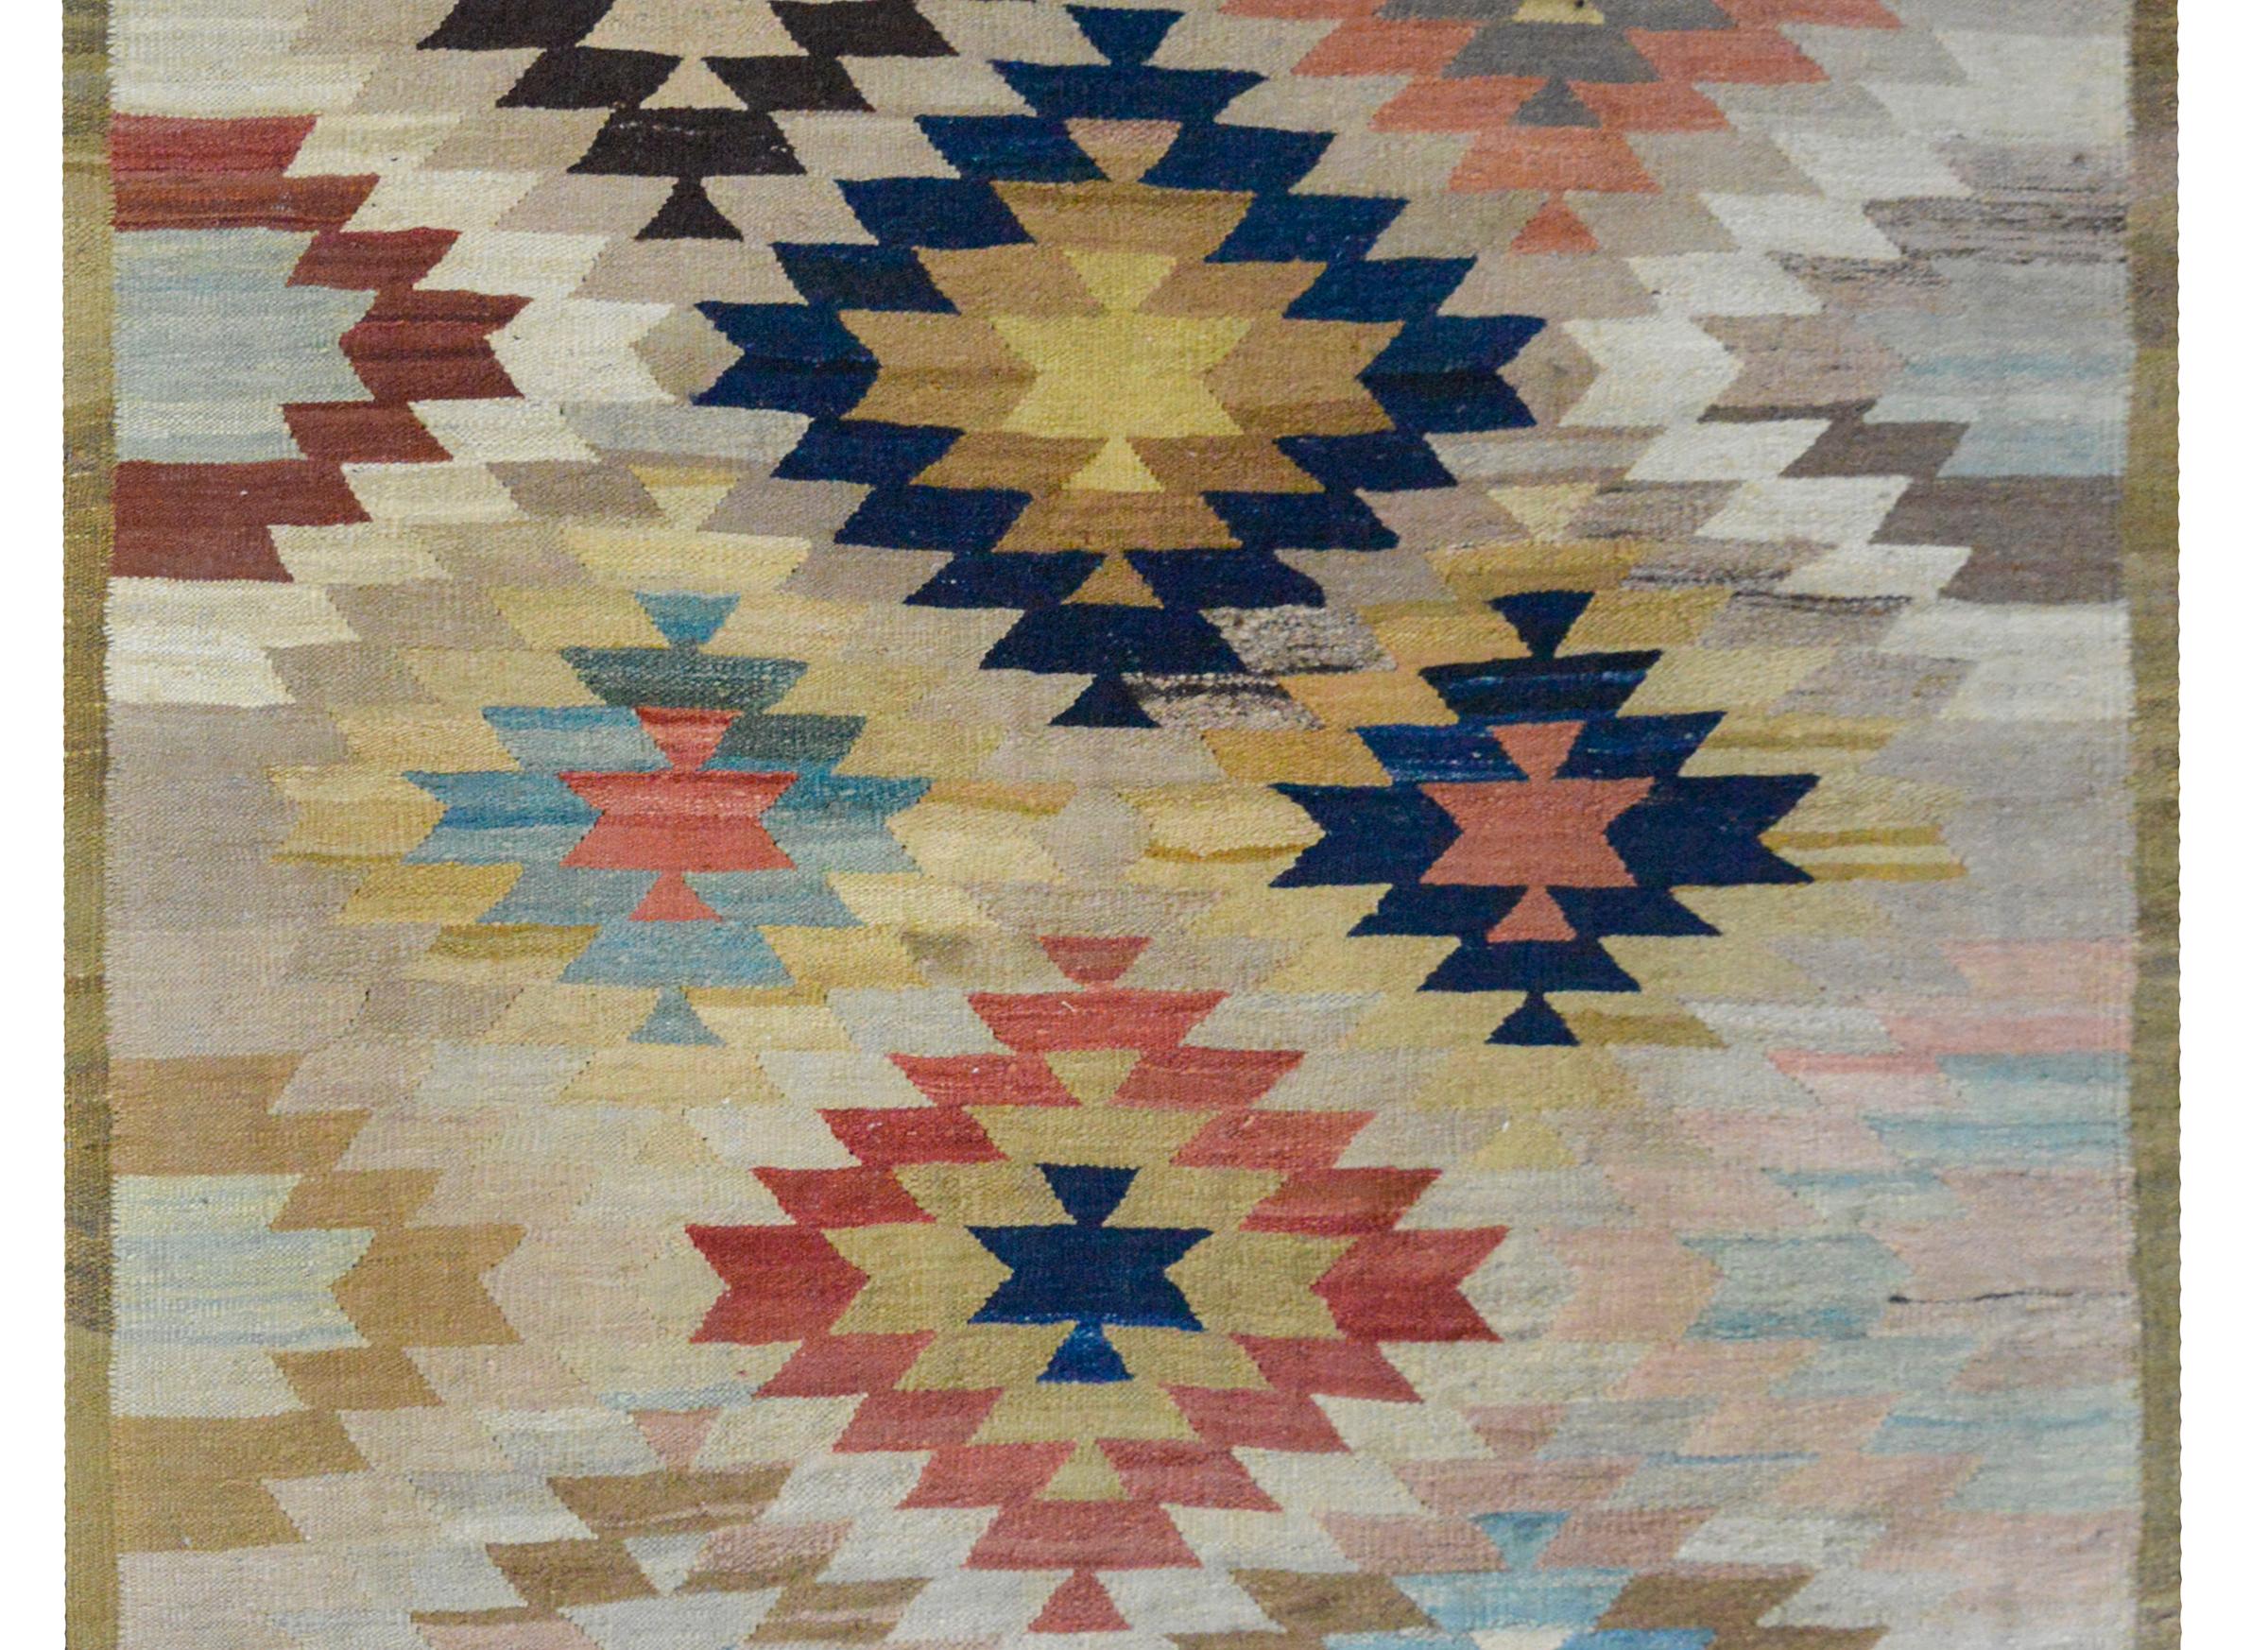 Un magnifique et audacieux tapis Kilim afghan de la fin du 20e siècle avec un motif géométrique à grande échelle tissé dans une myriade de couleurs, dont le cramoisi, l'or, le rose, le gris, le blanc et l'indigo foncé, et entouré d'une fine bordure